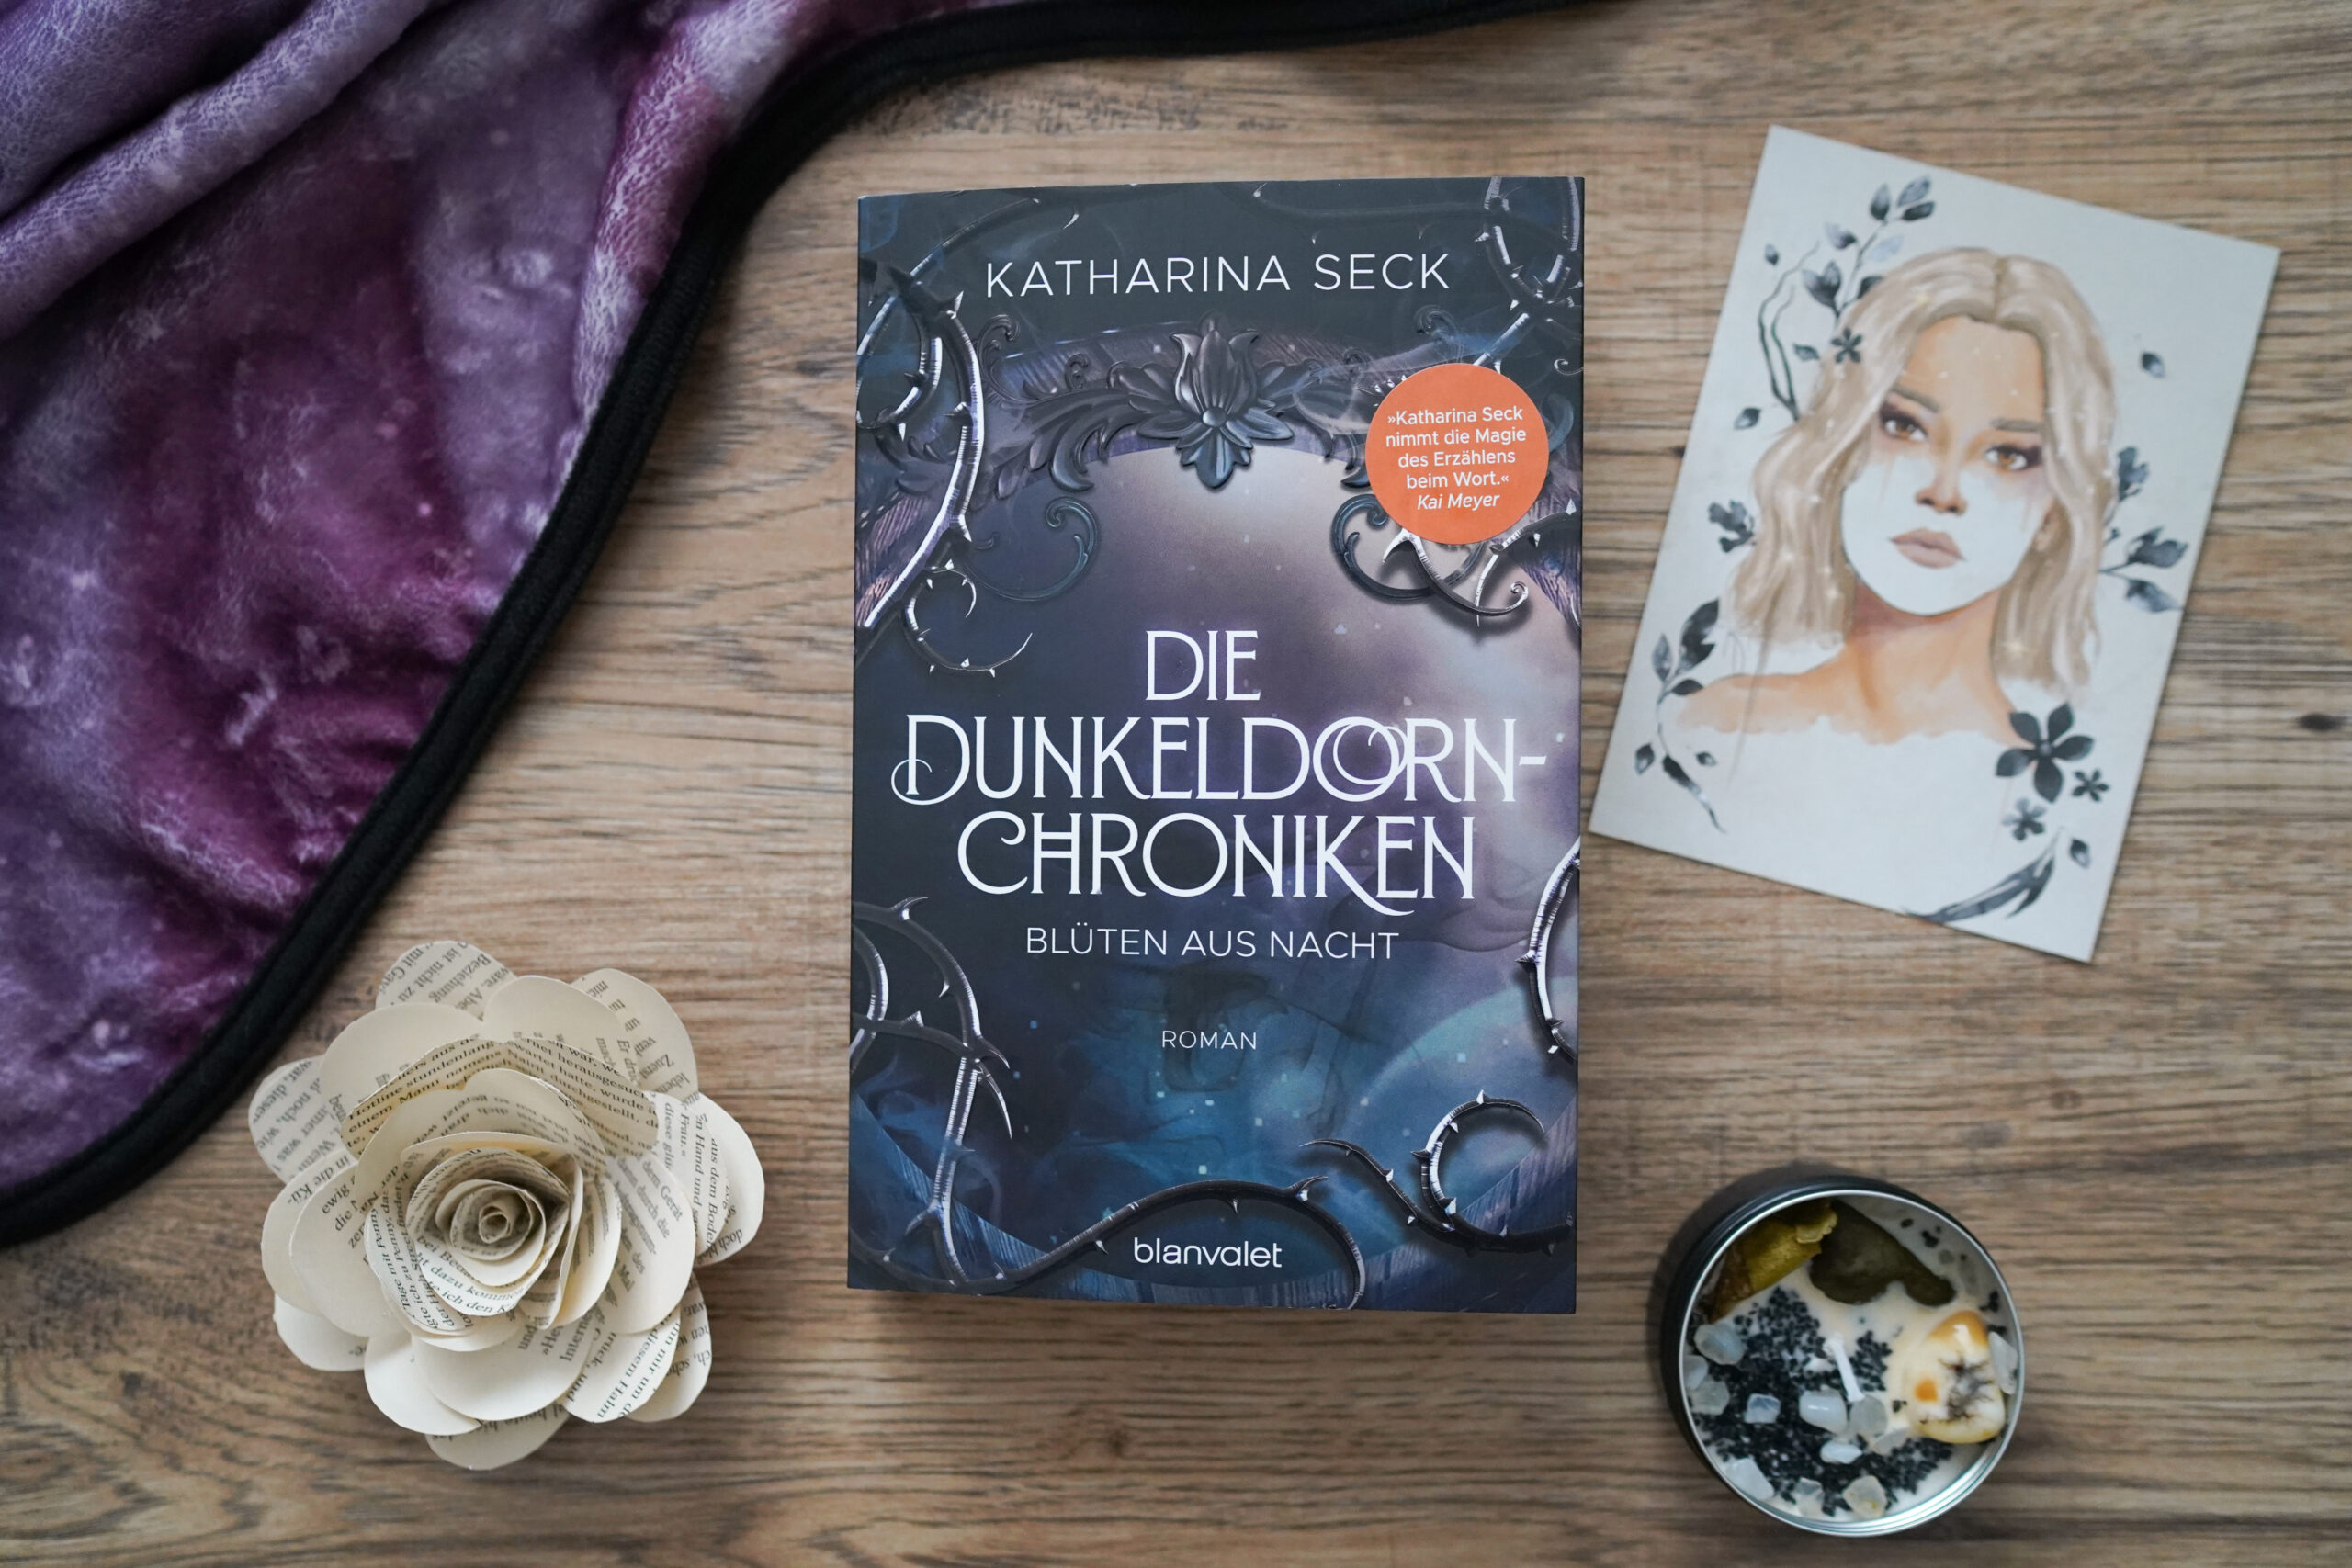 Die Dunkeldorn-Chroniken 1: Blüten aus Nacht – Katharina Seck graphic